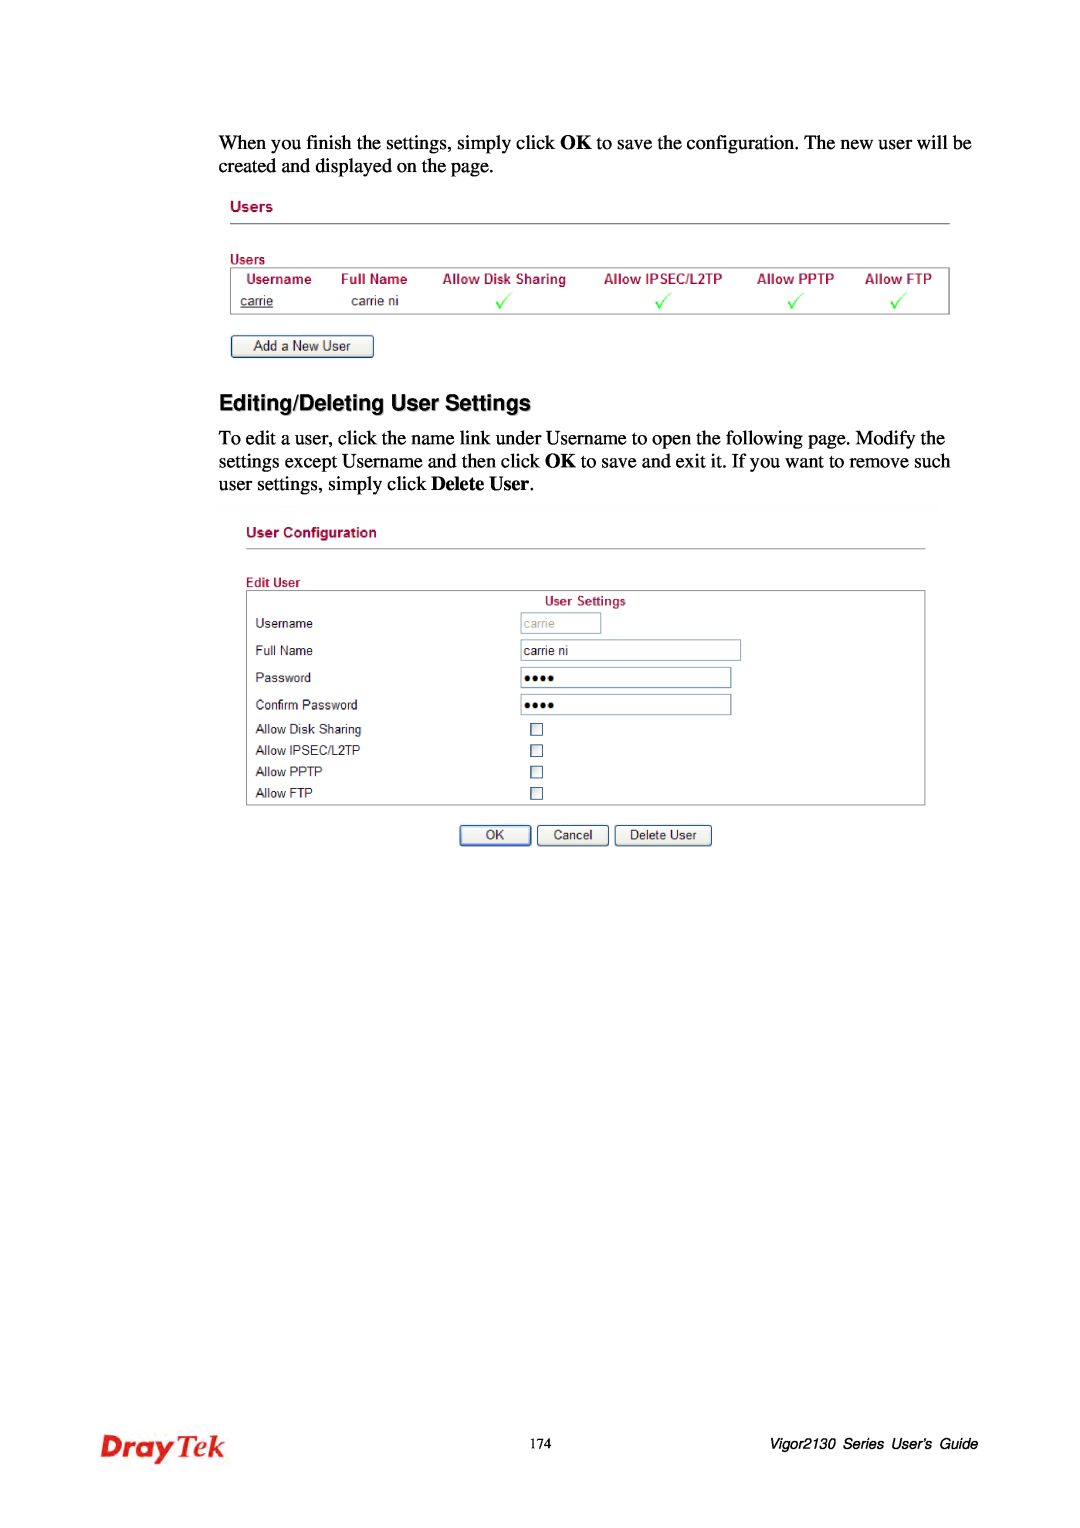 Draytek manual Editing/Deleting User Settings, Vigor2130 Series User’s Guide 